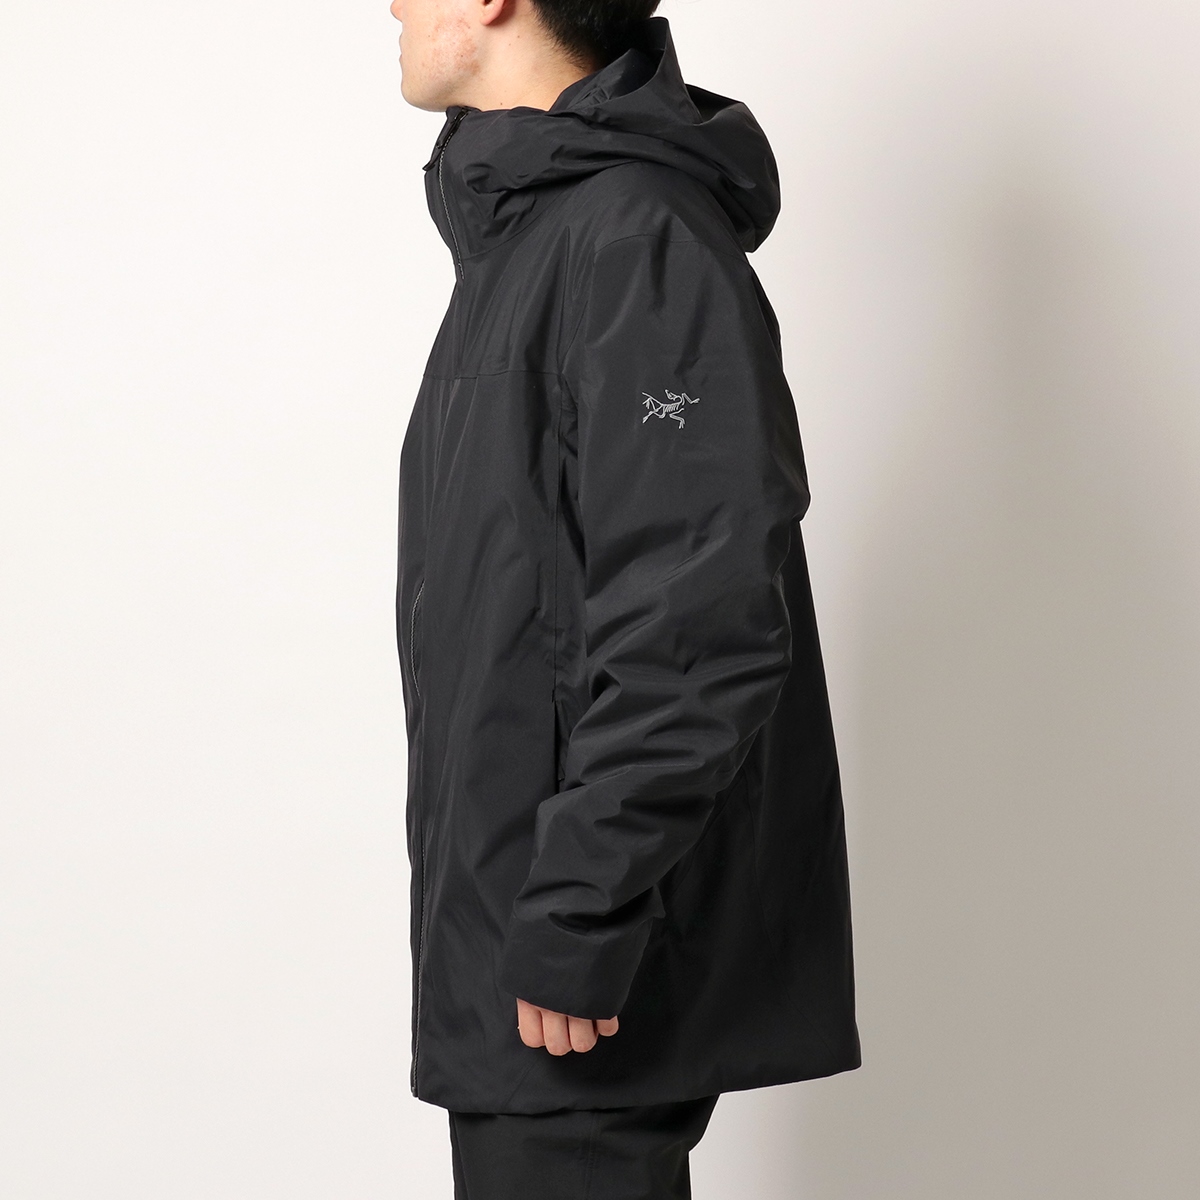 魅力的な価格 【Arcteryx】 Sサイズ ブラック Jacket Koda - ダウン 